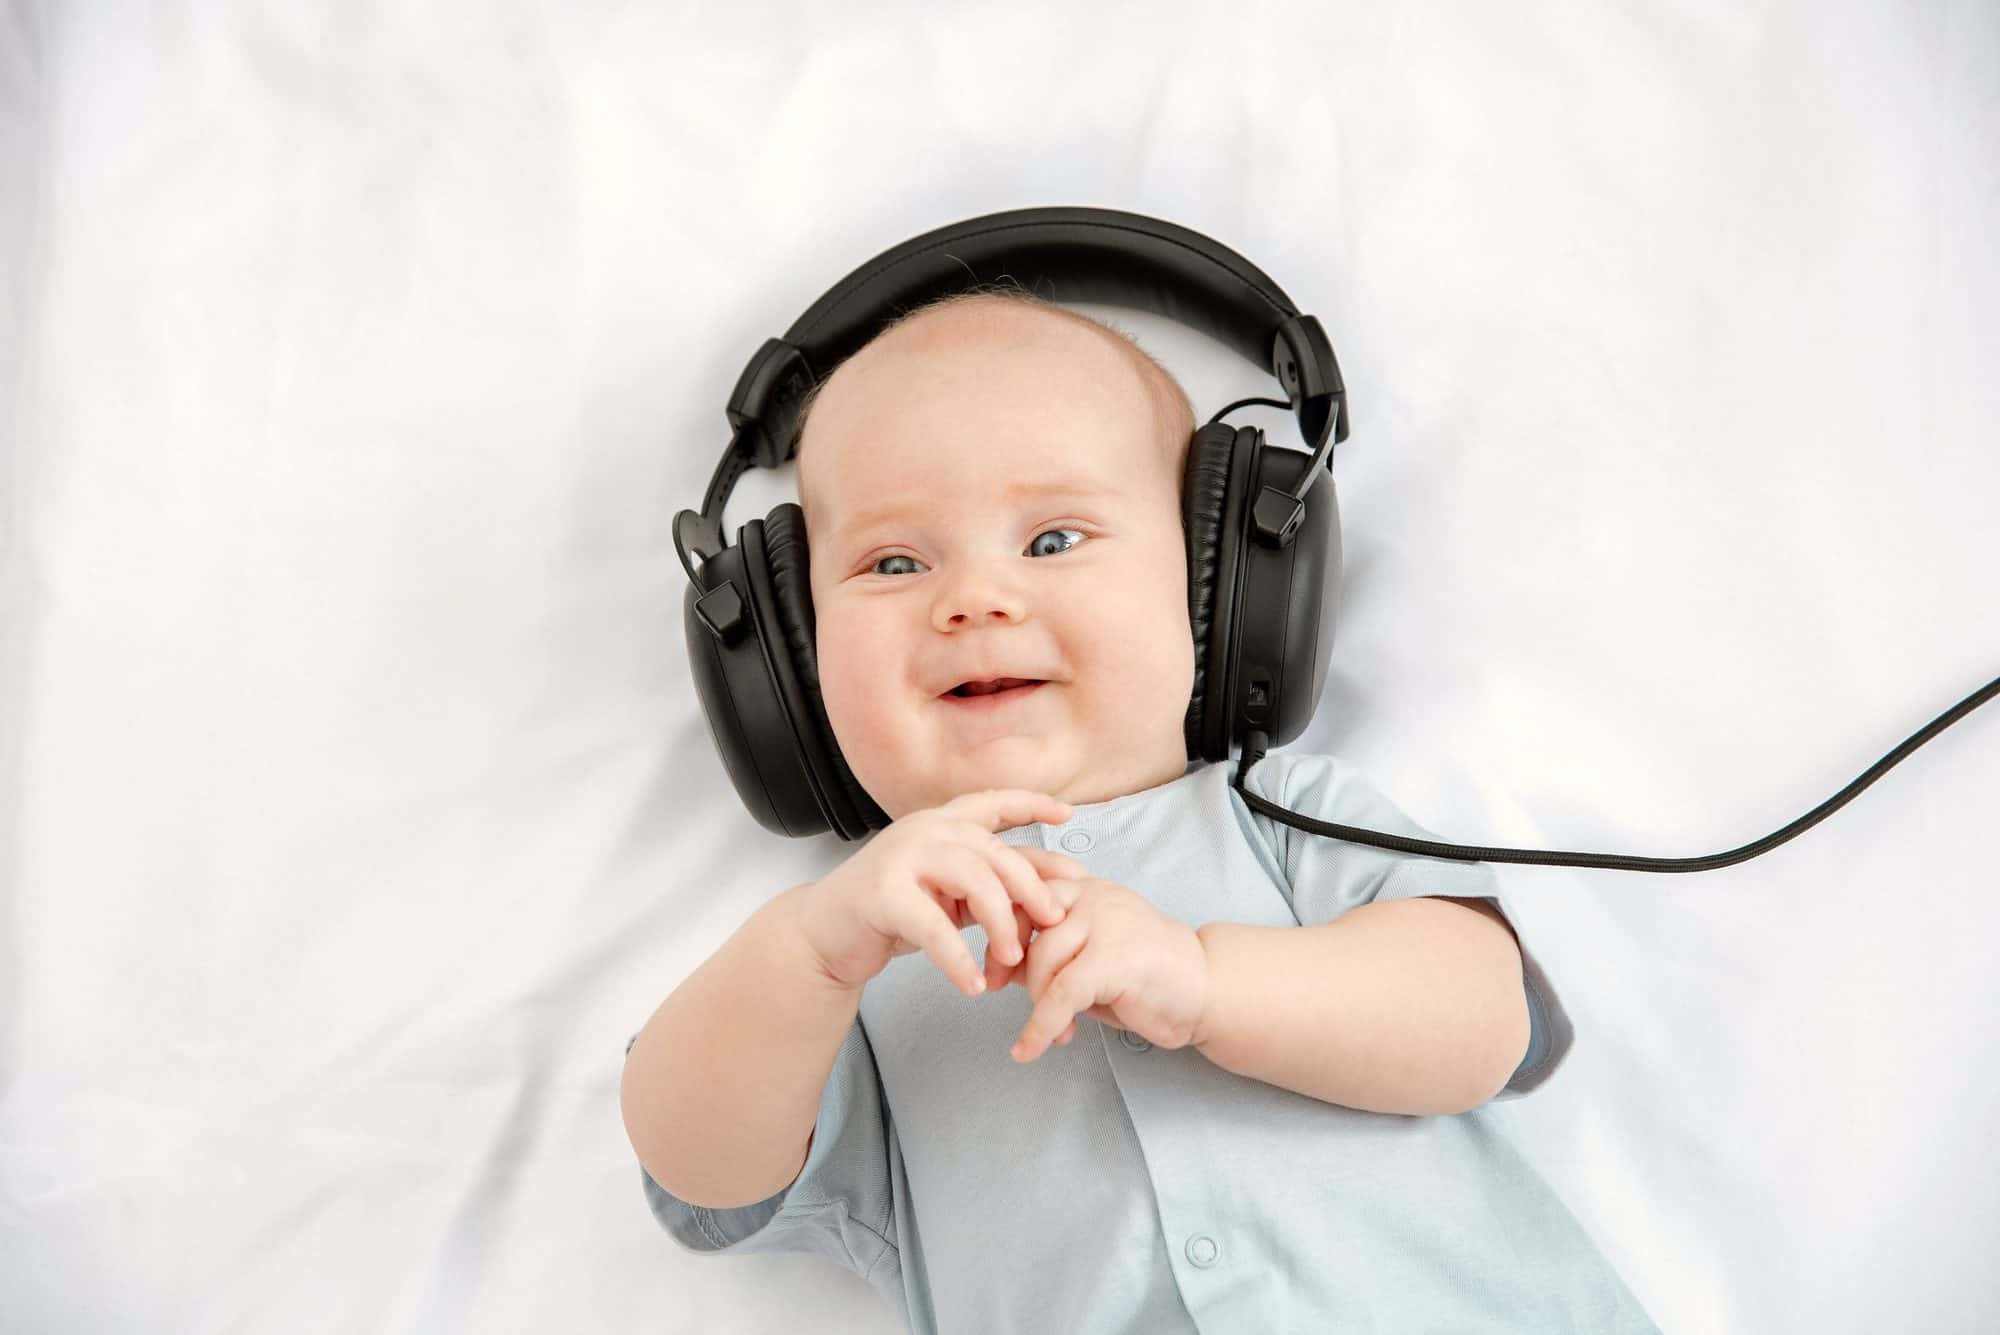 Beneficios de la música y cómo introducirla en bebés y niños